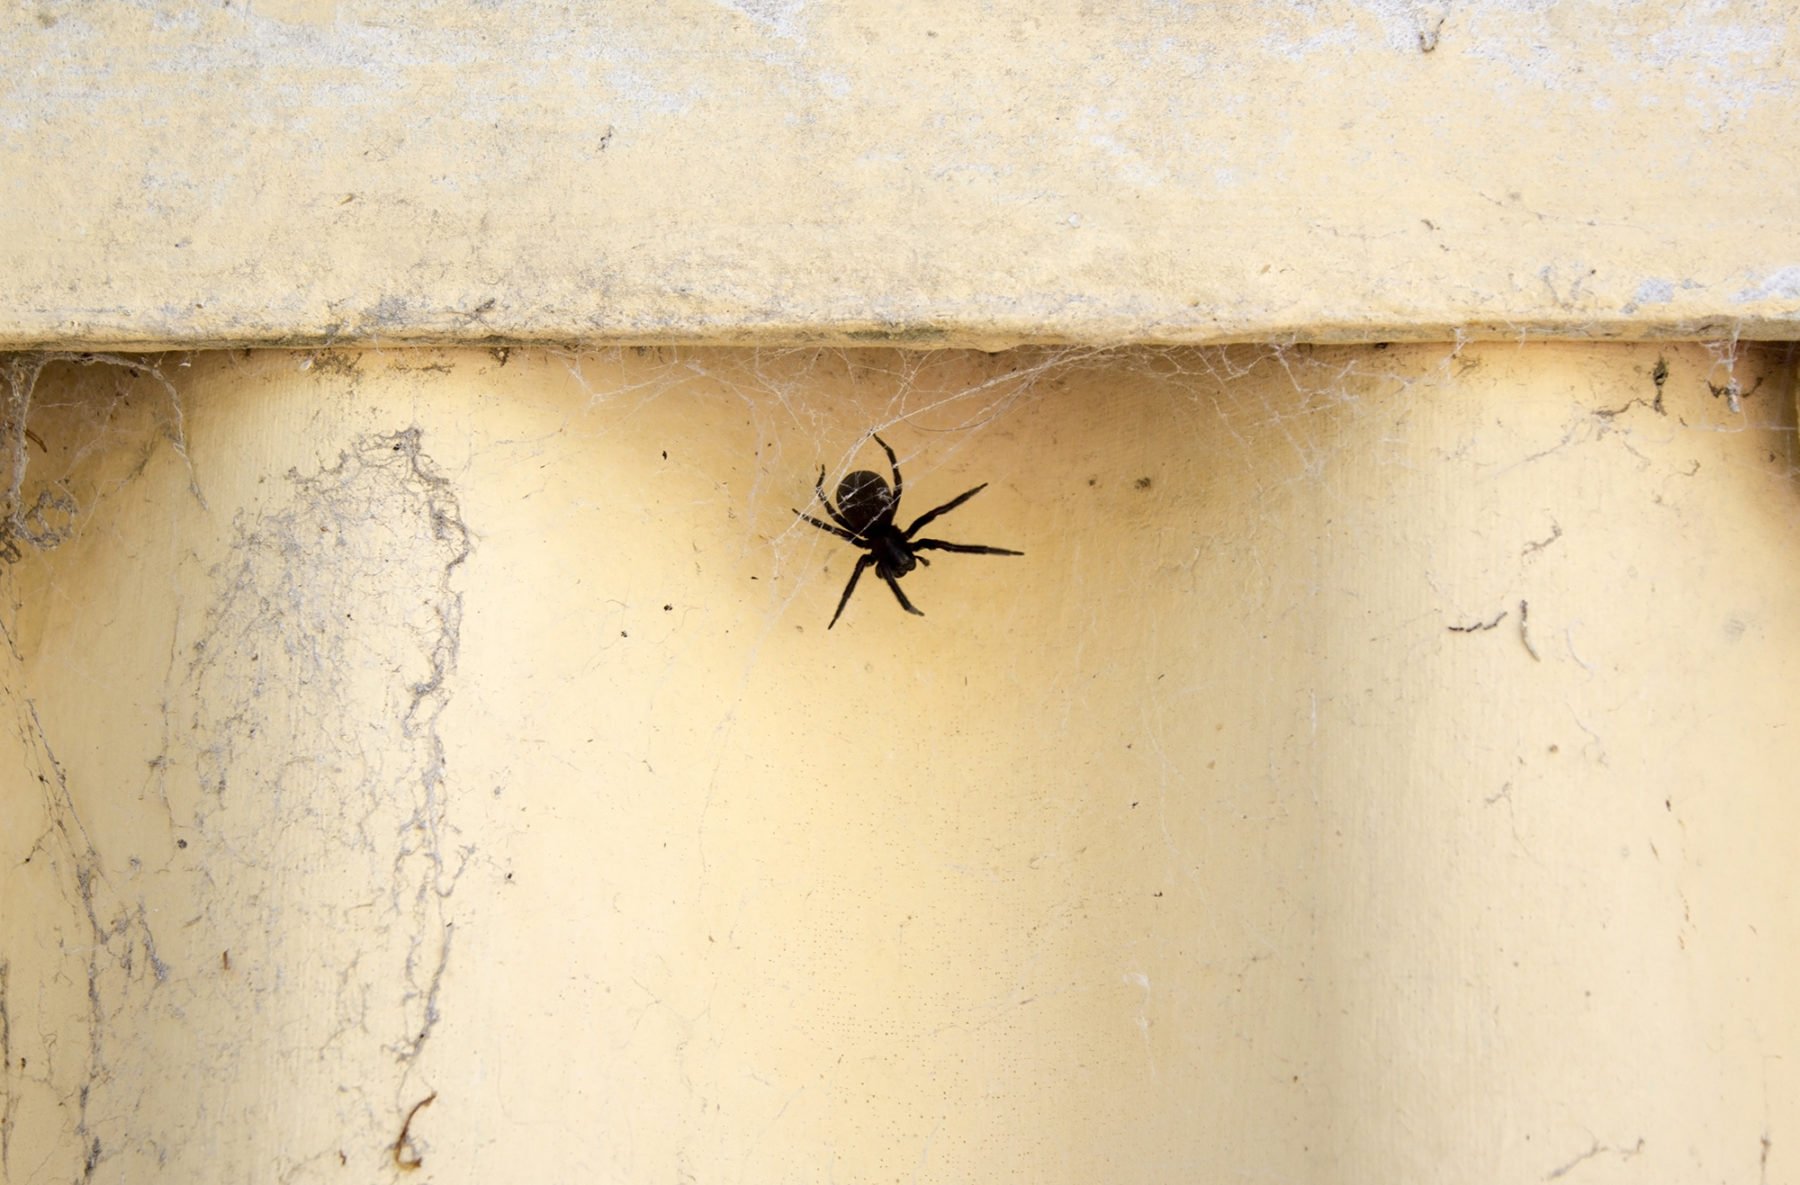 Black House Spider 1800x1185 